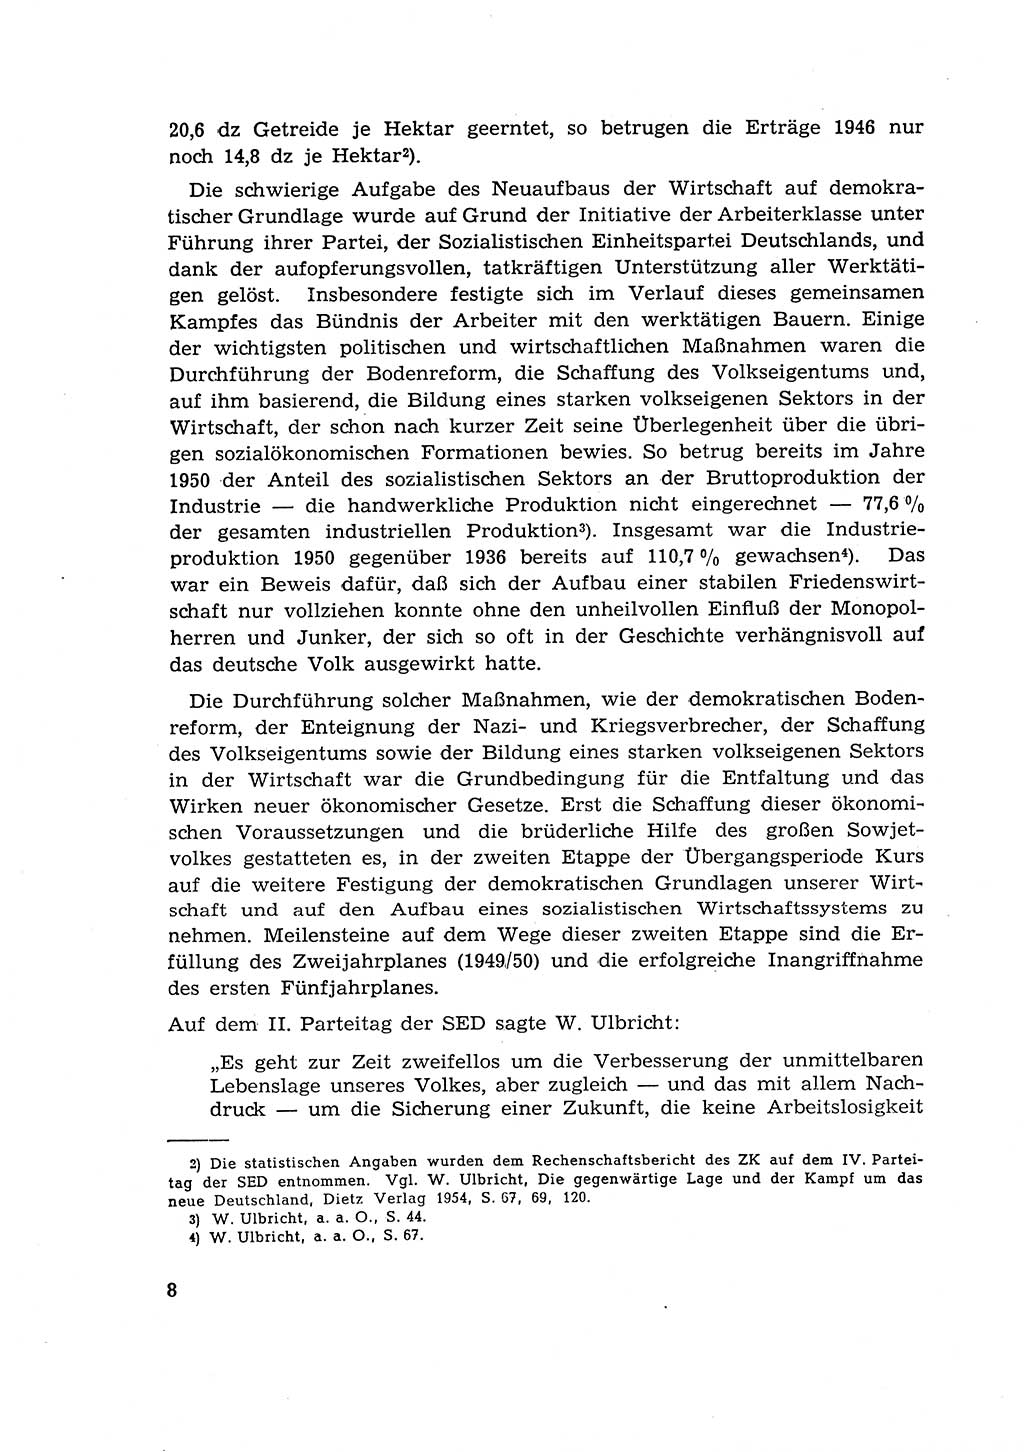 Materialien zum Strafrecht, Besonderer Teil [Deutsche Demokratische Republik (DDR)] 1955, Seite 8 (Mat. Strafr. BT DDR 1955, S. 8)